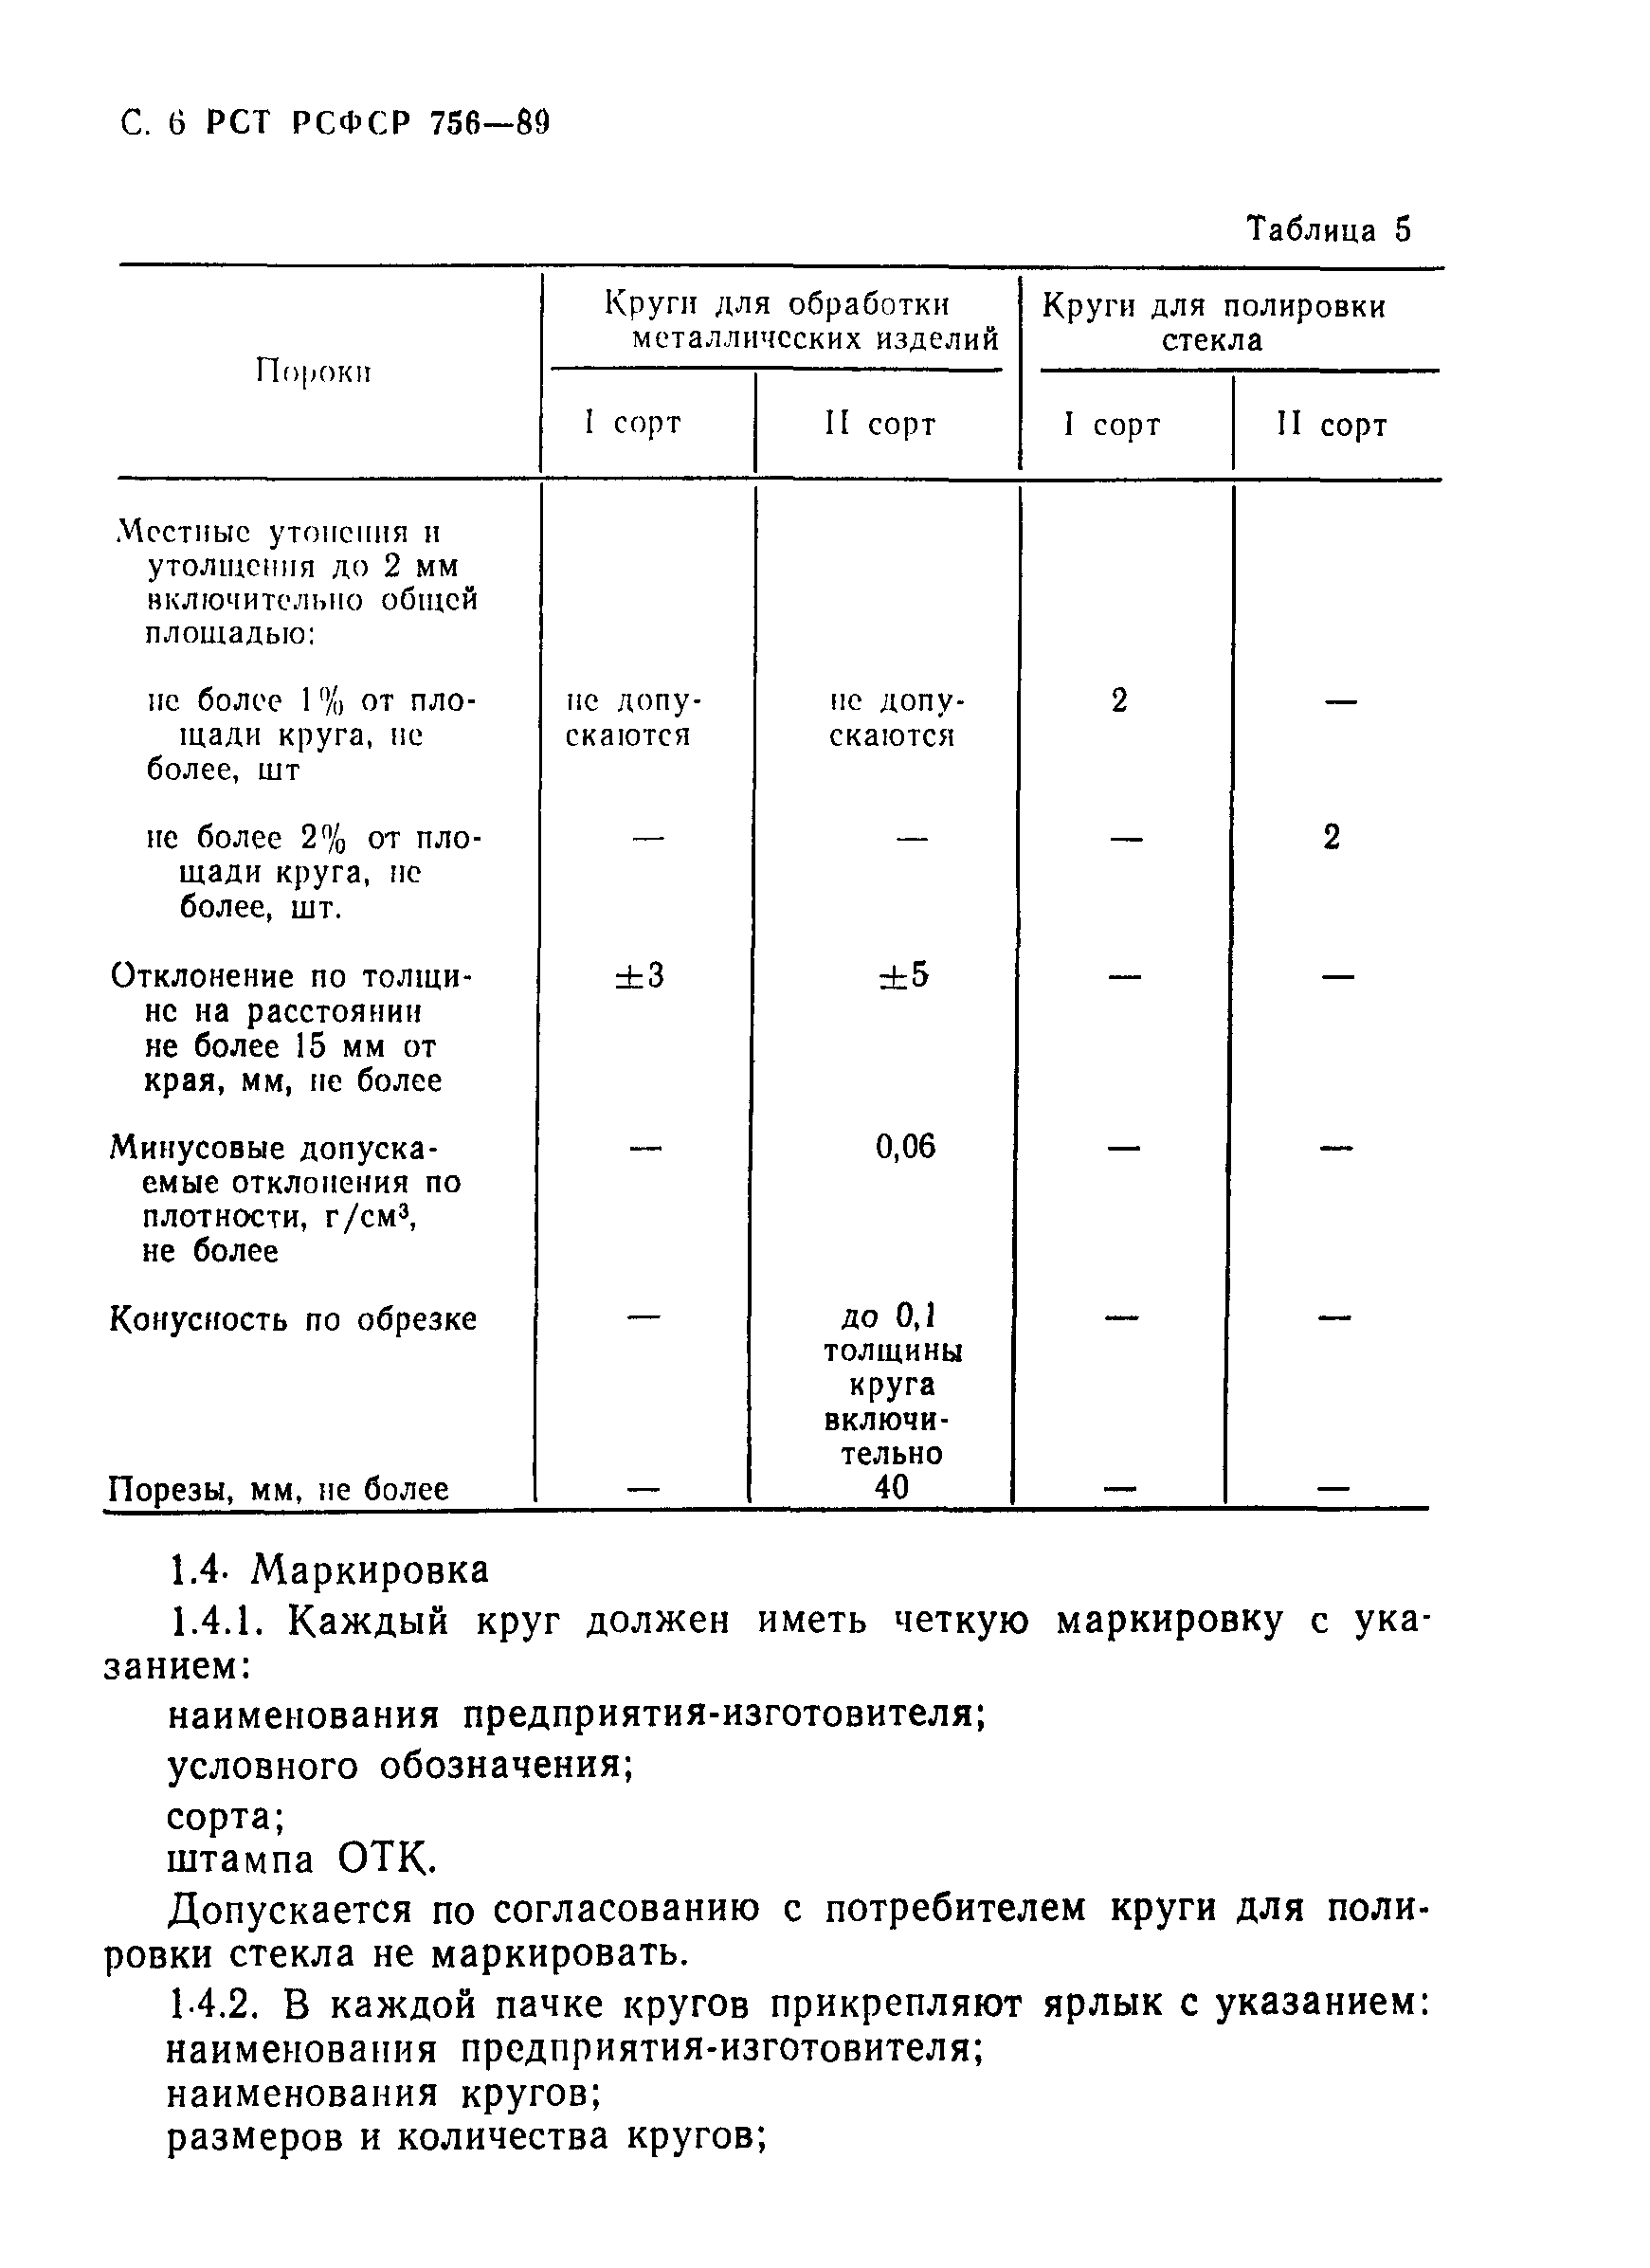 РСТ РСФСР 756-89